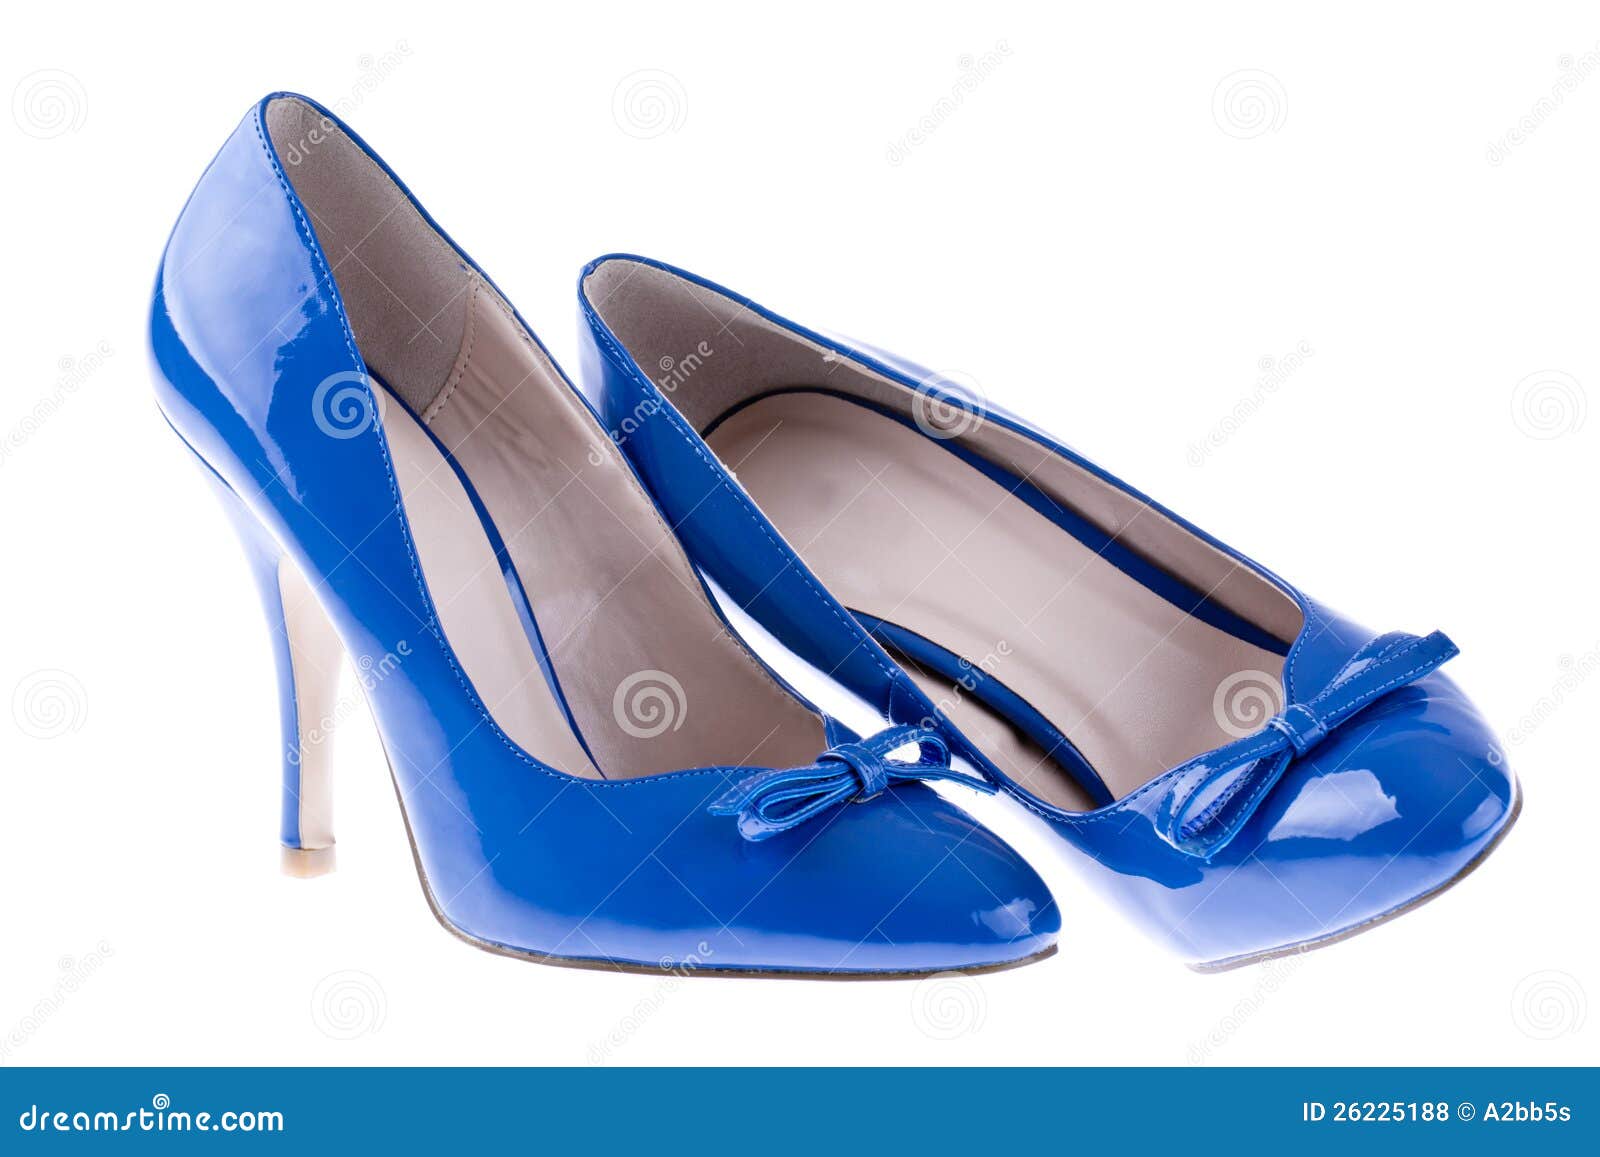 blue shoes women